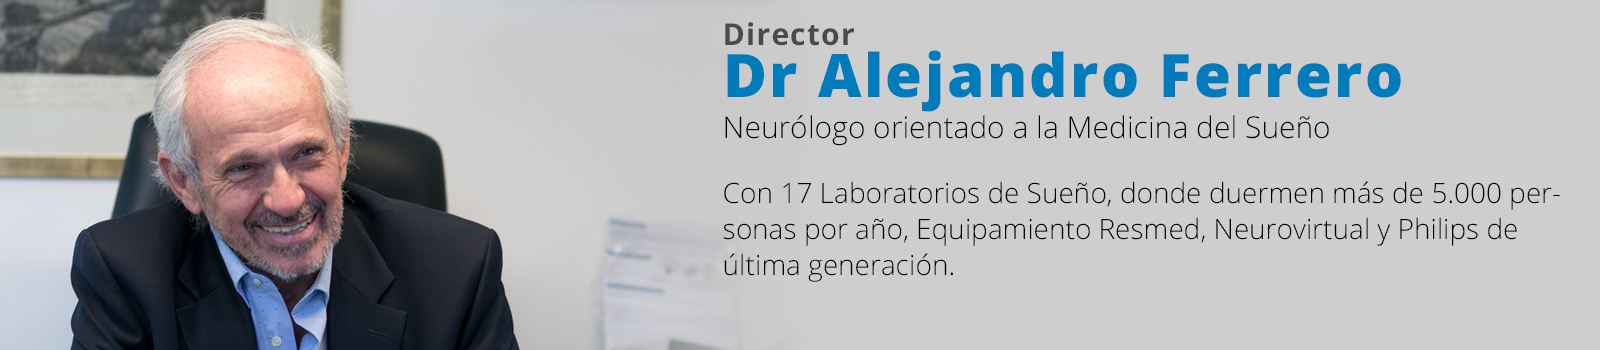 Dr. Alejandro Ferrero - Fundador de IFN